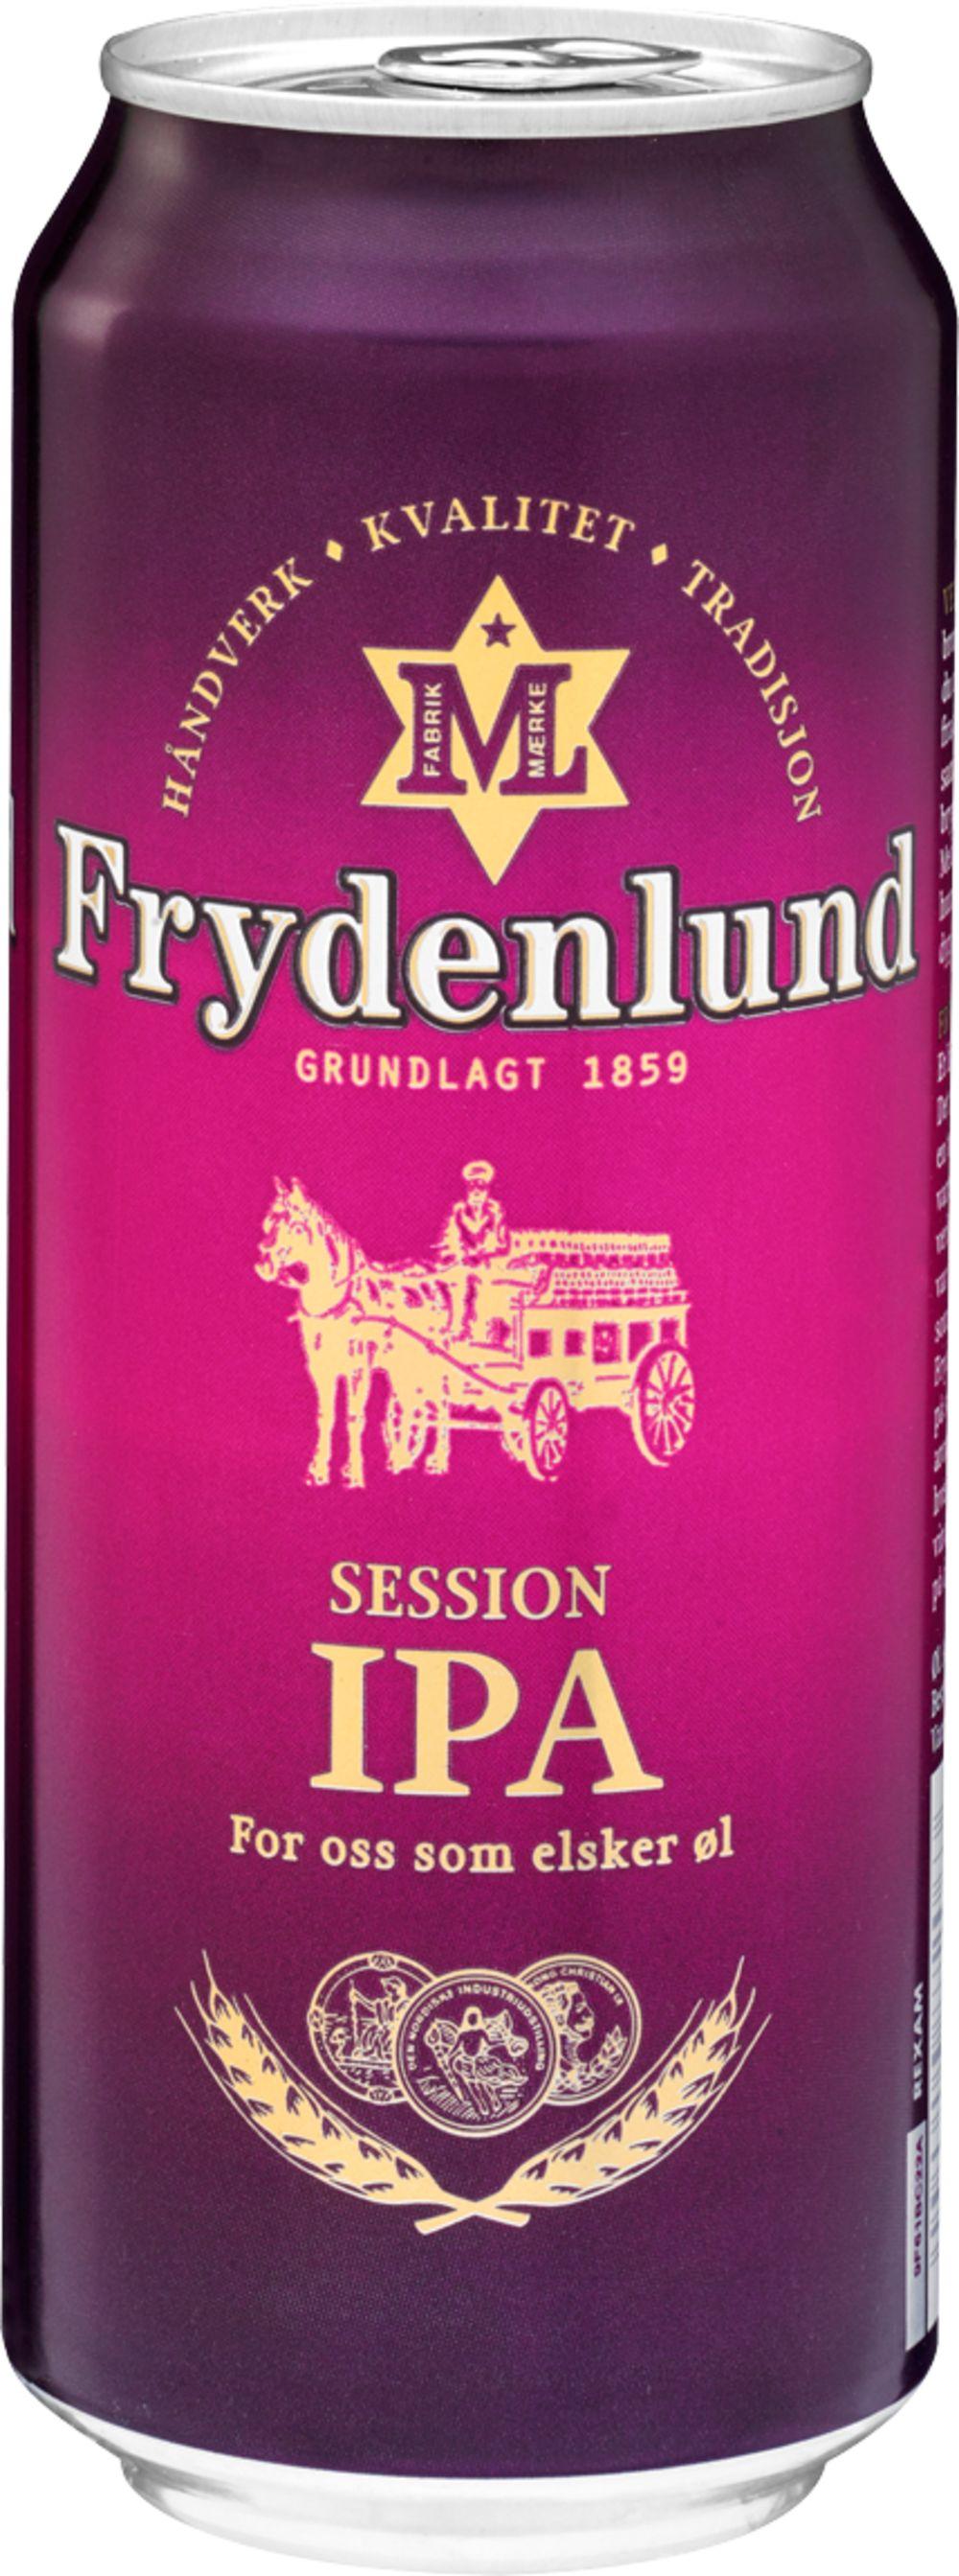 Frydenlund IPA 0,50 l - inkl. pant